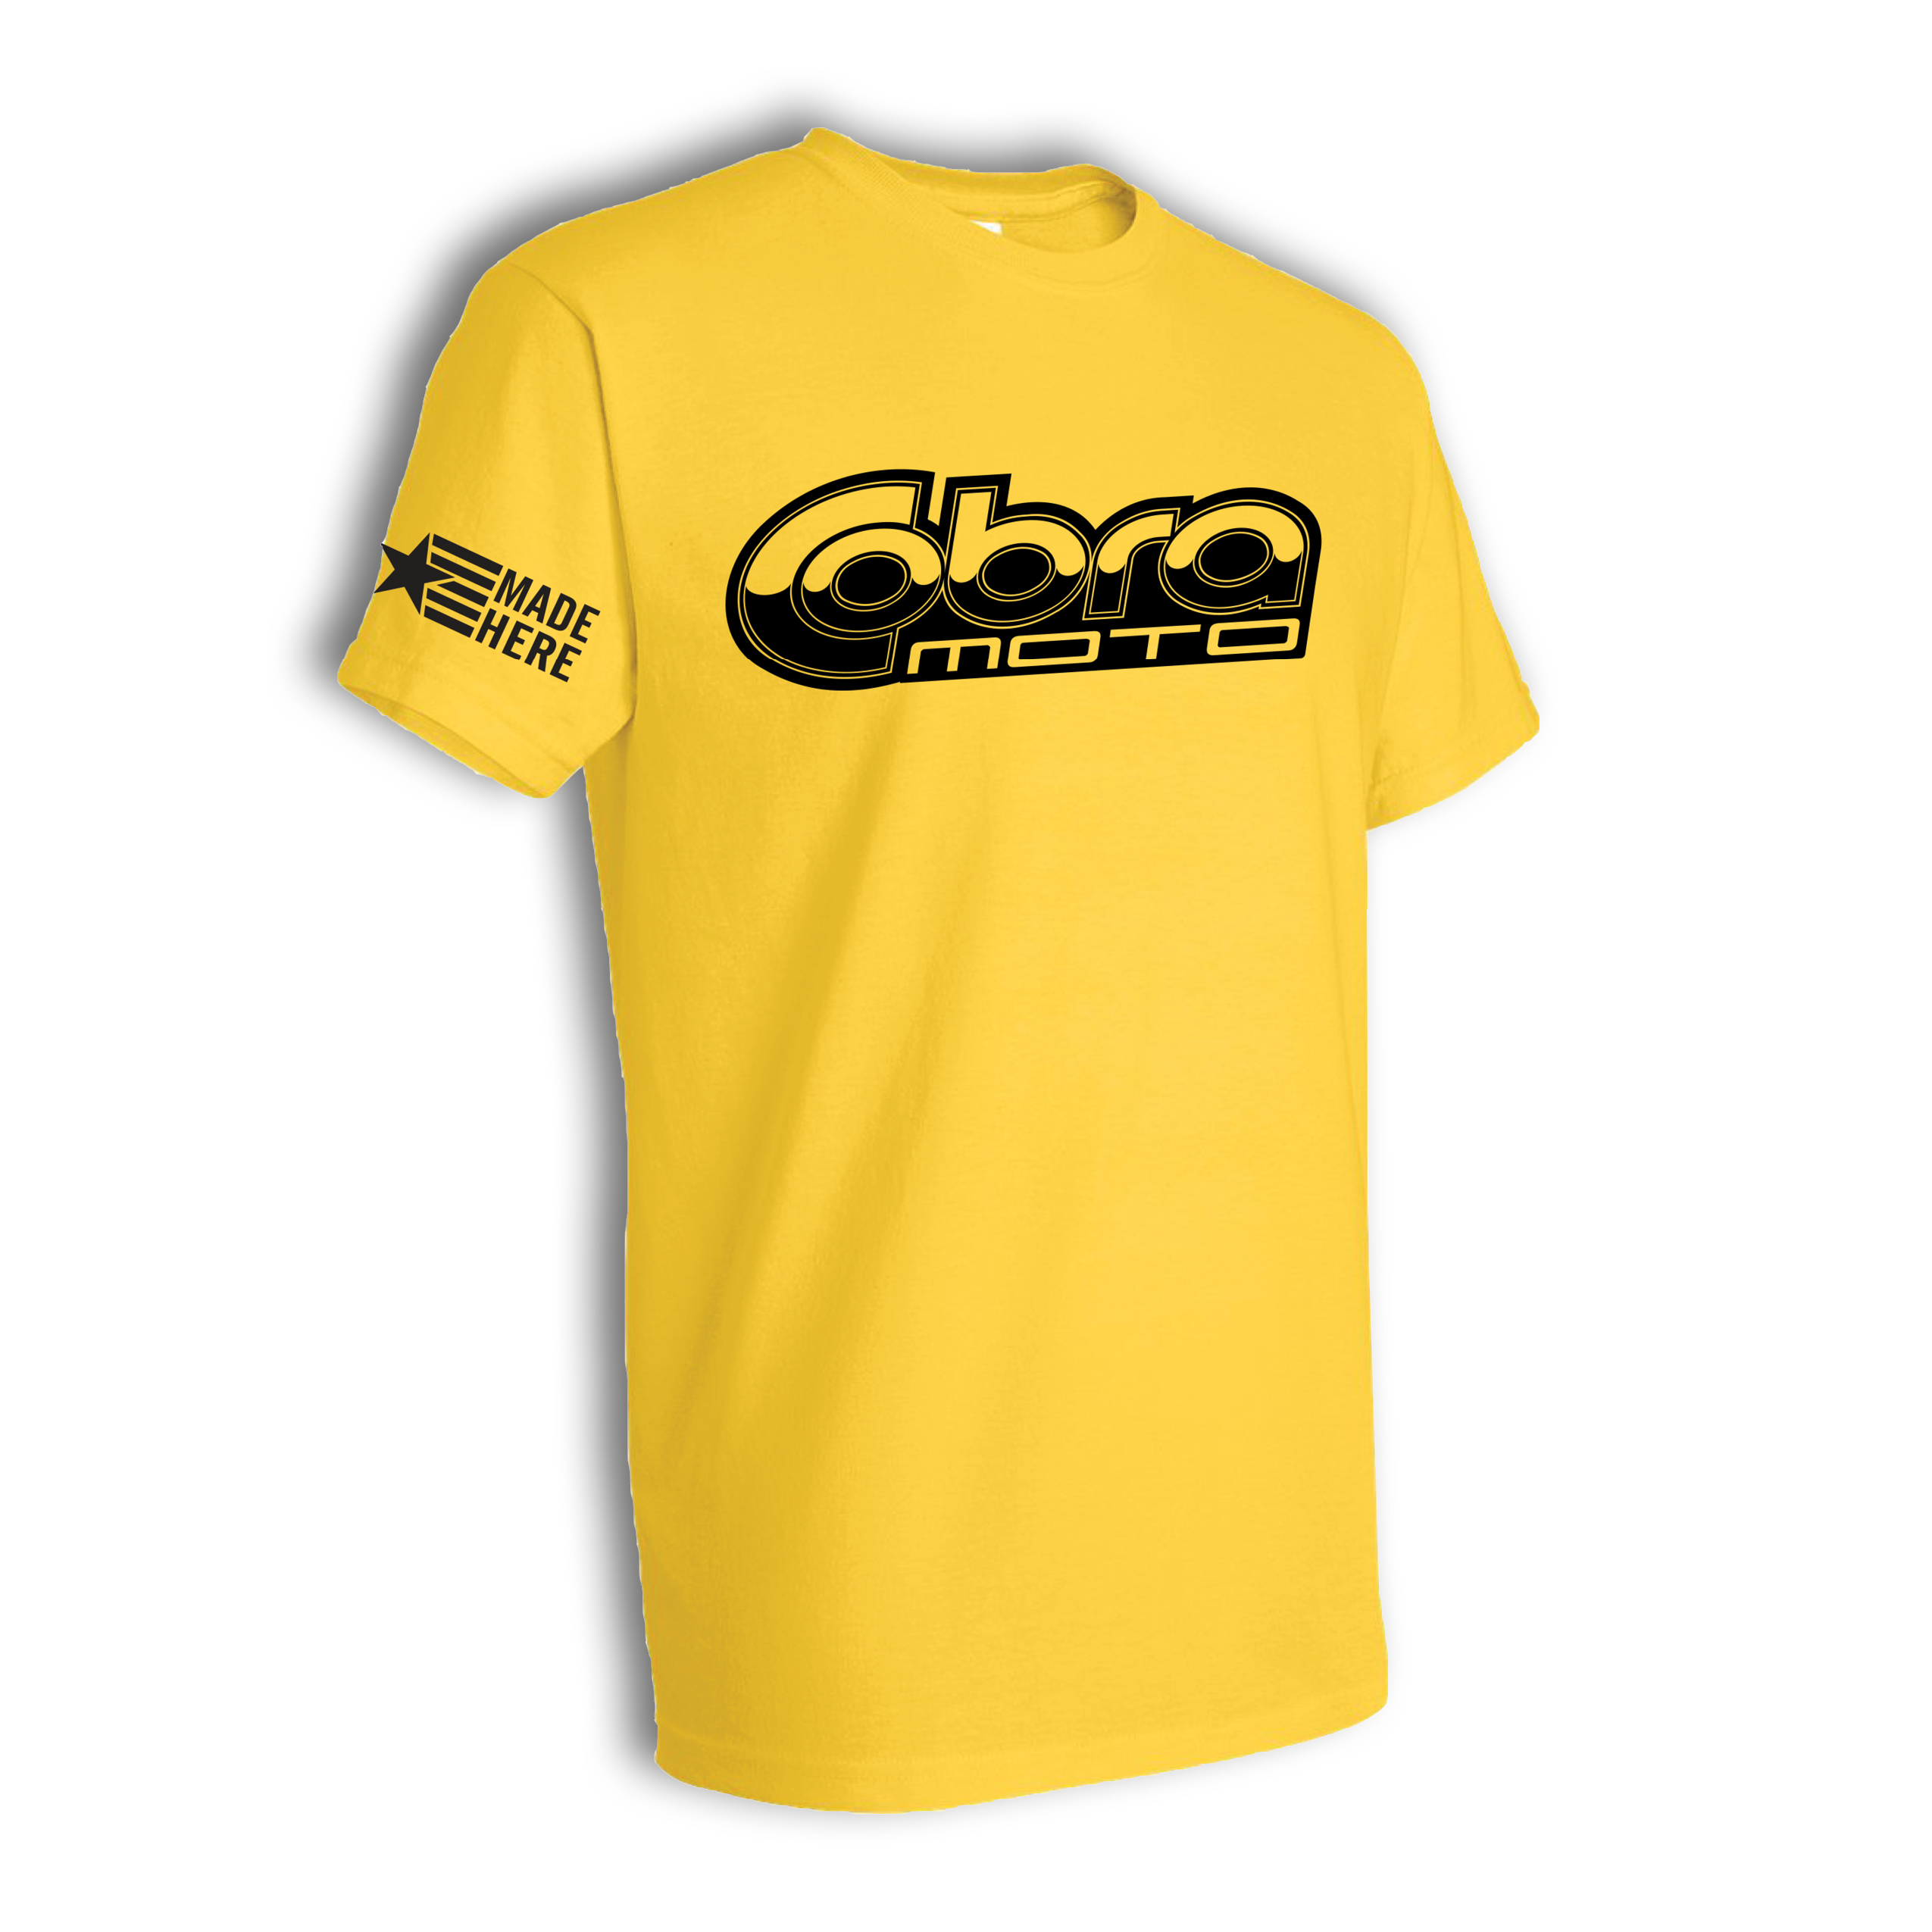 Cobra MOTO Yellow T-Shirt – Cobra MOTO